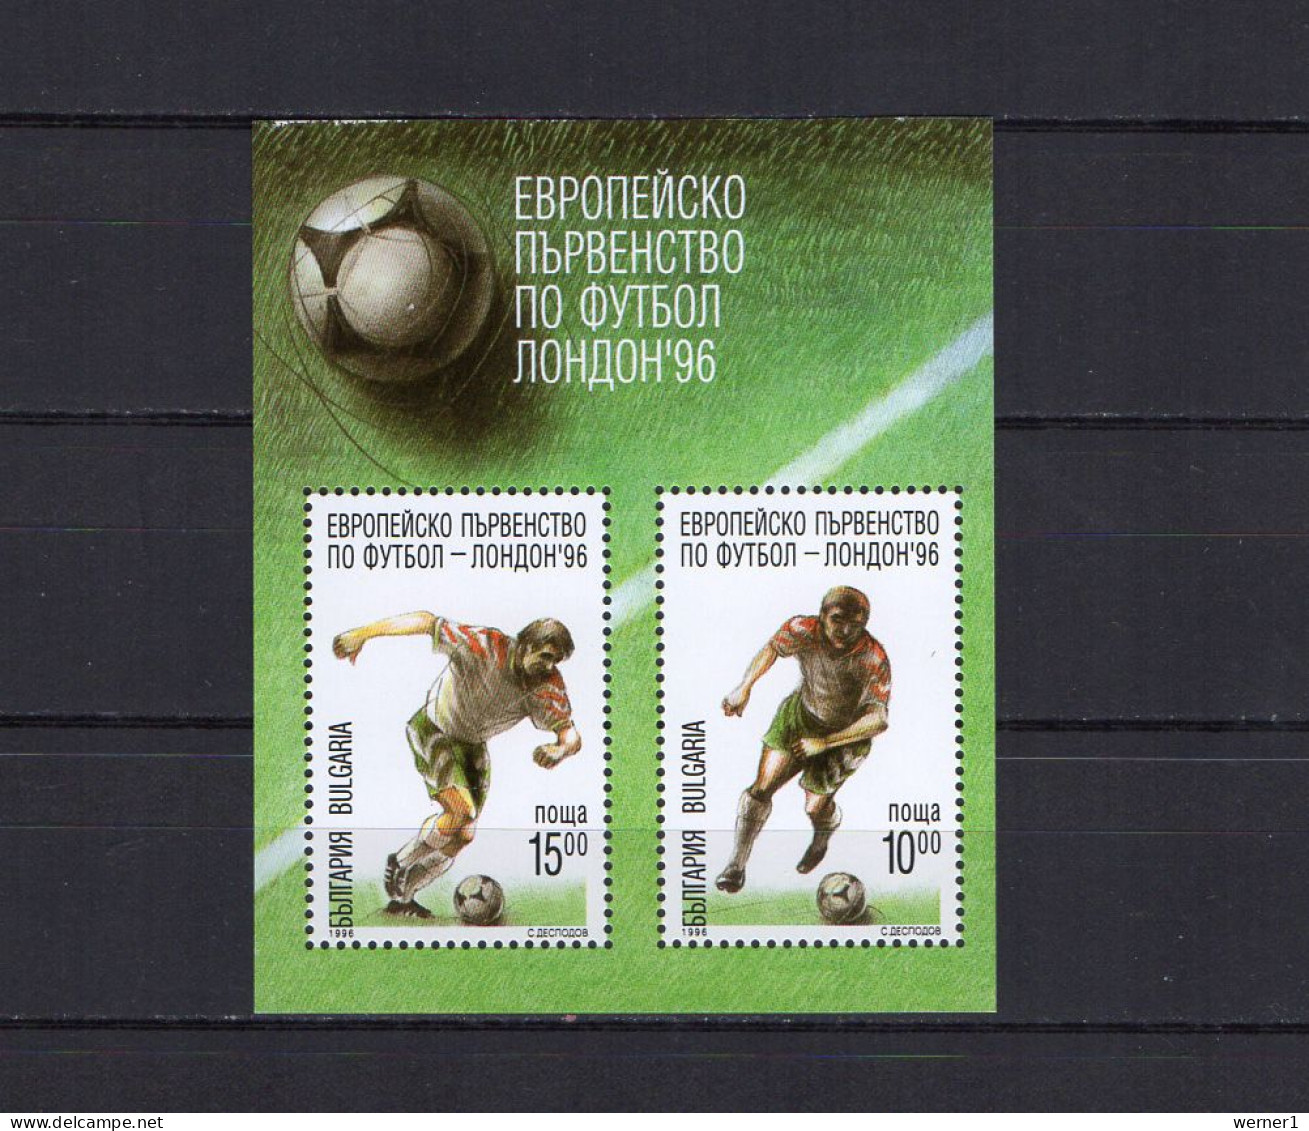 Bulgaria 1996 Football Soccer European Championship S/s MNH - Fußball-Europameisterschaft (UEFA)